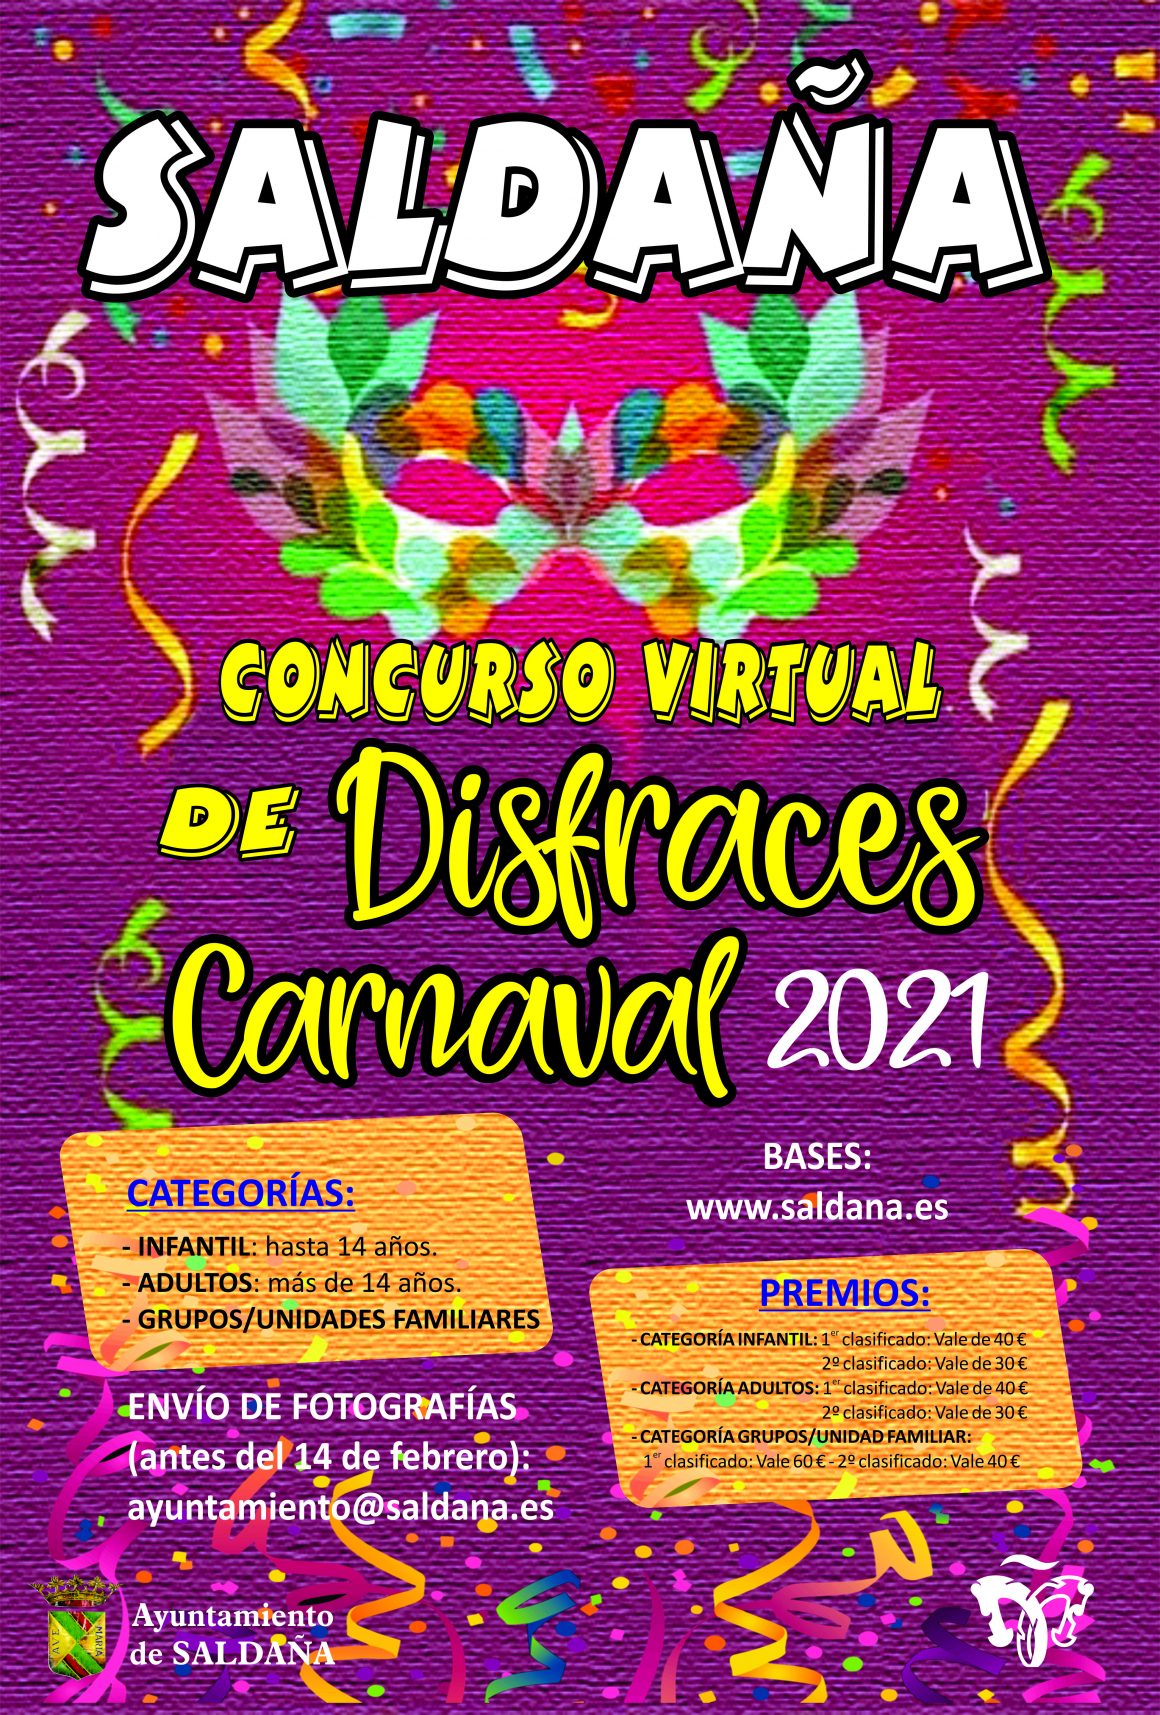 Concurso de disfraces carnaval 2021